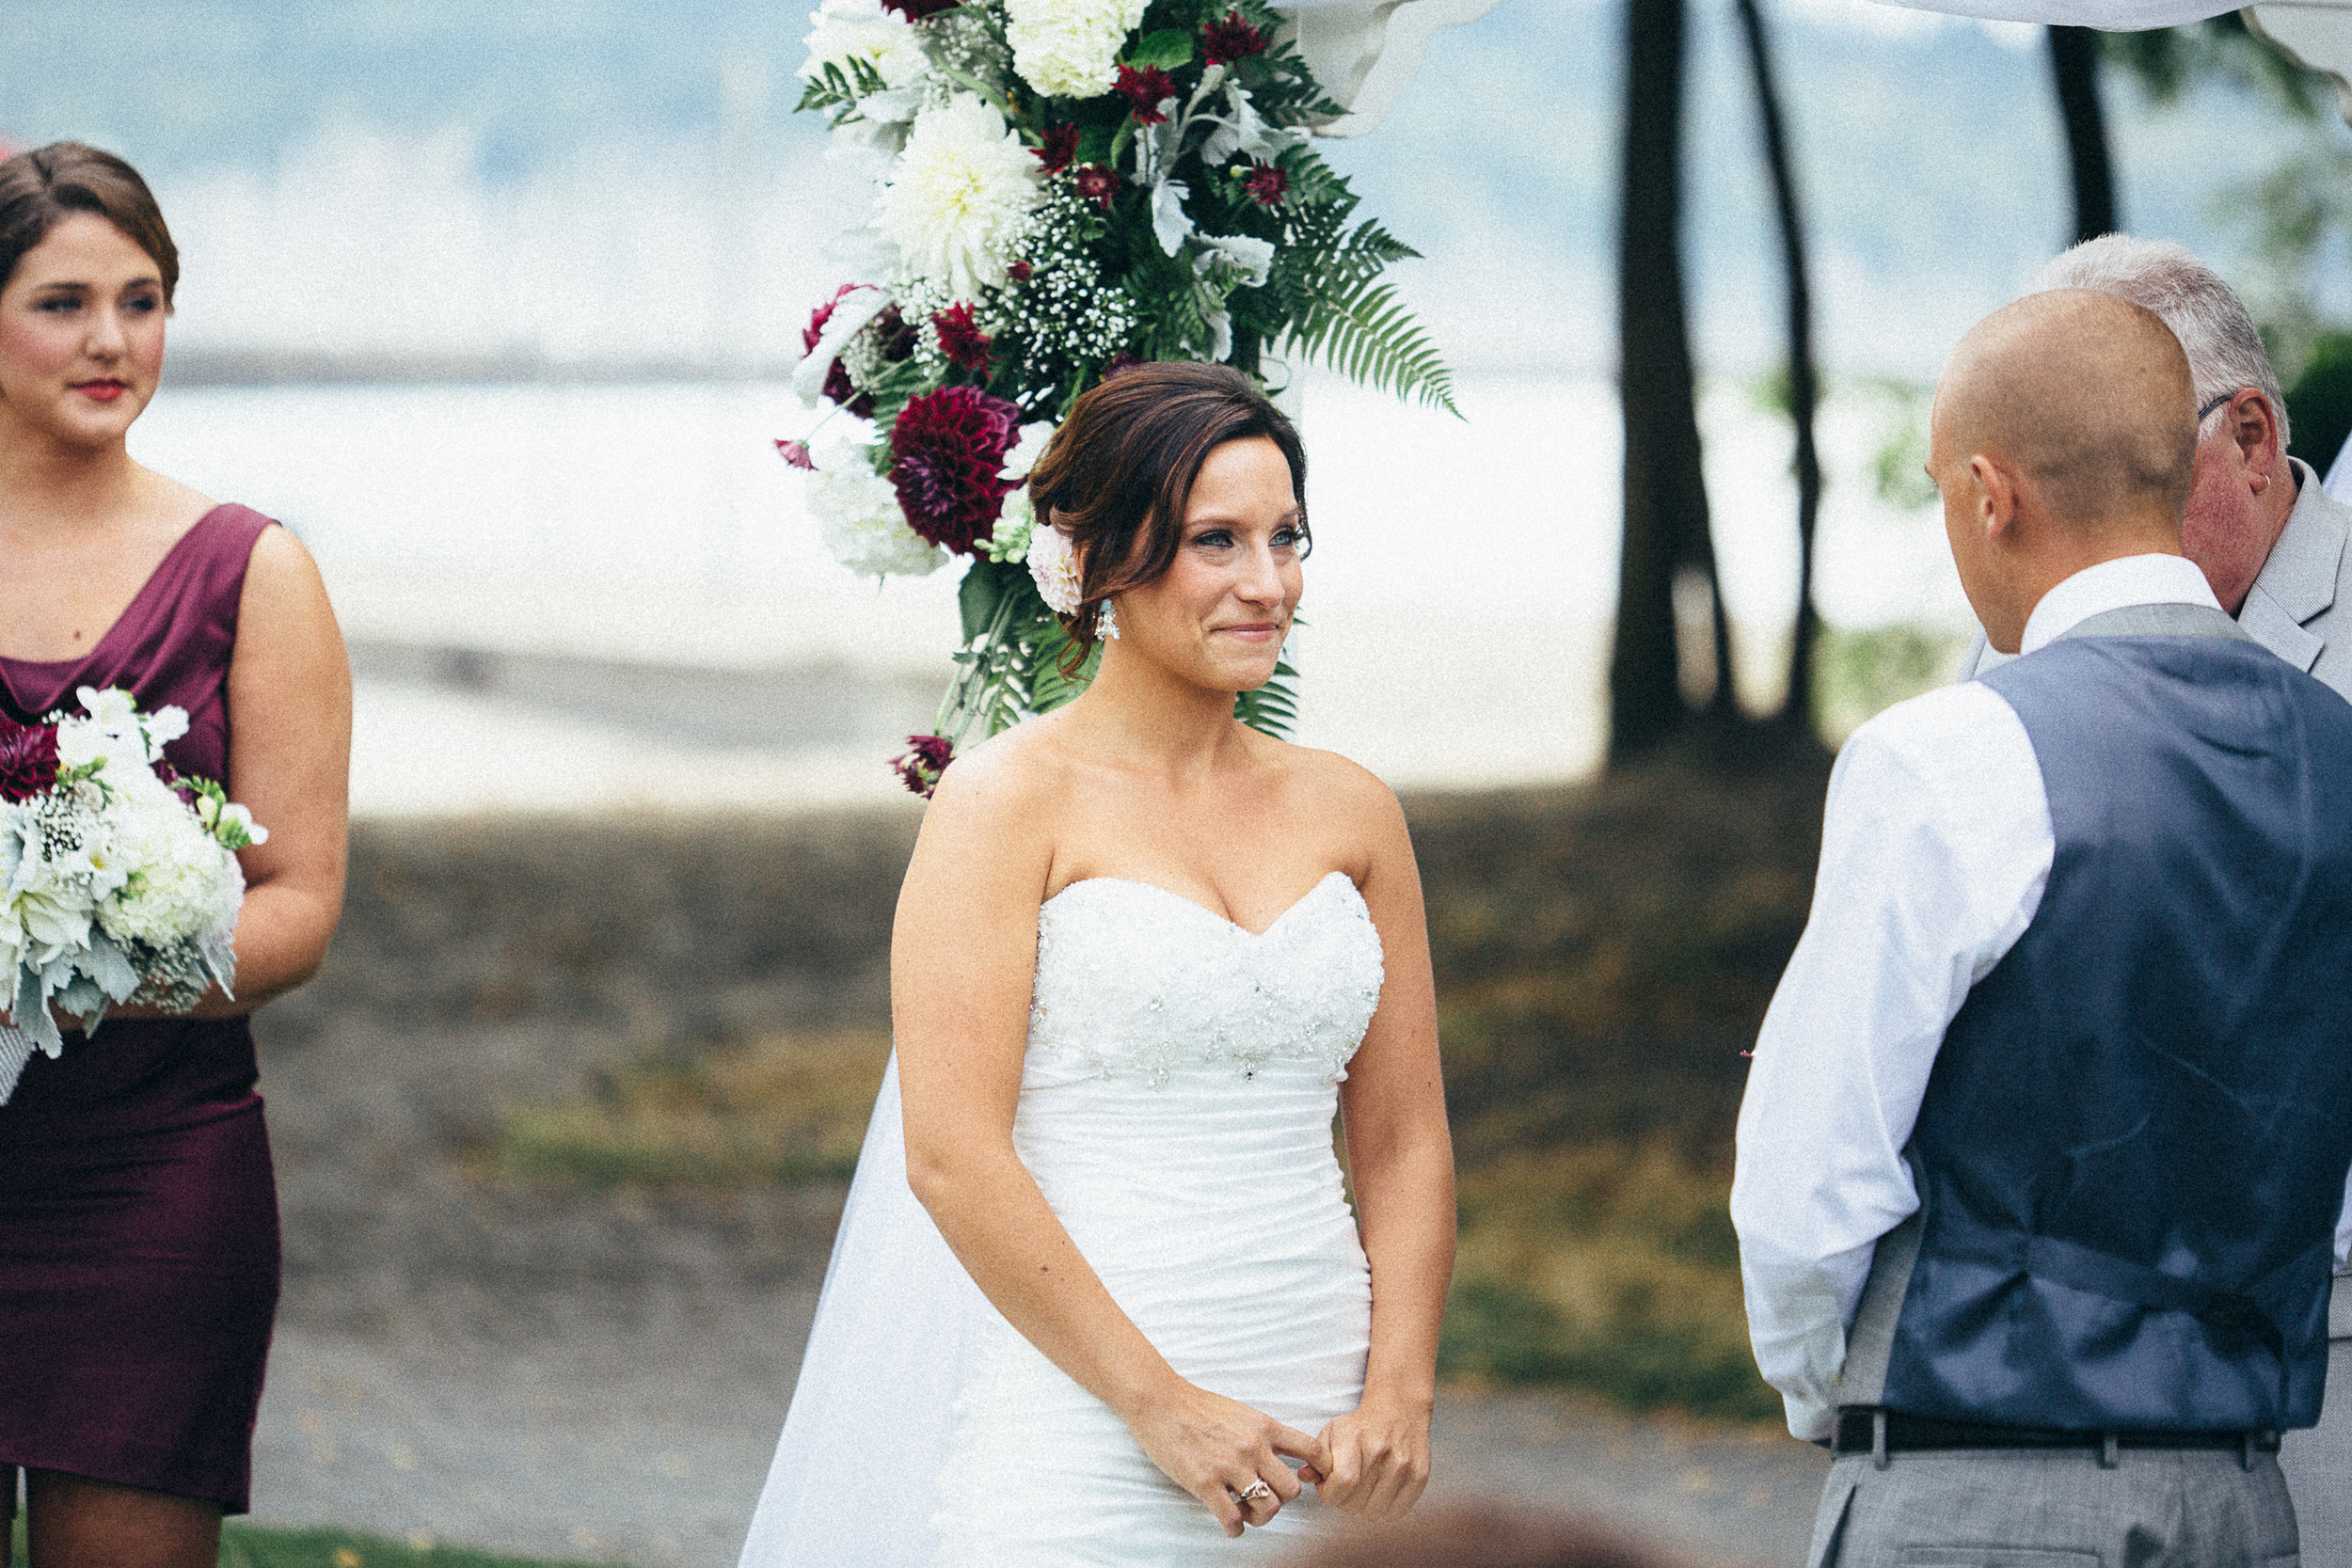 Seattle Washington Engagement & Wedding Photographer